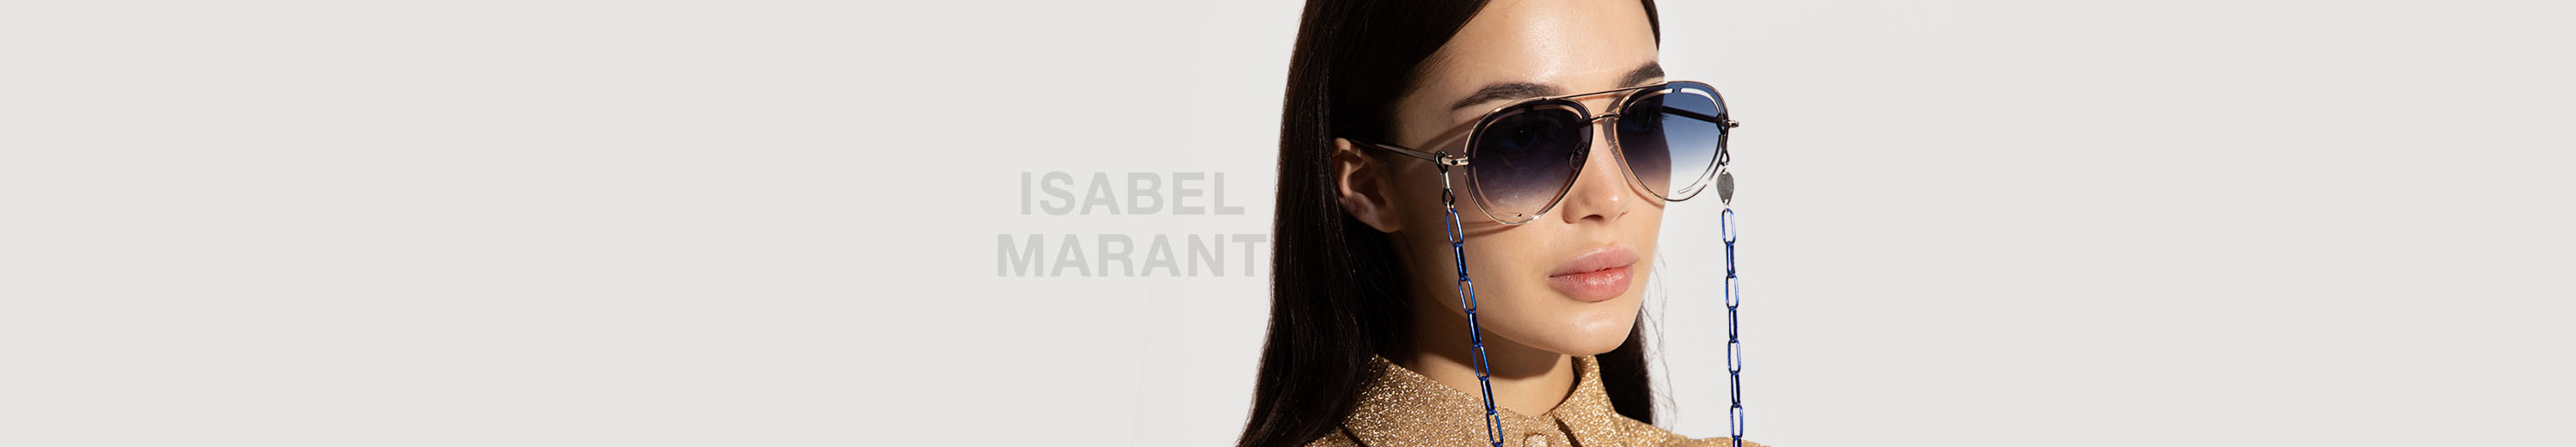 Isabel Marant Glasses and Eyewear